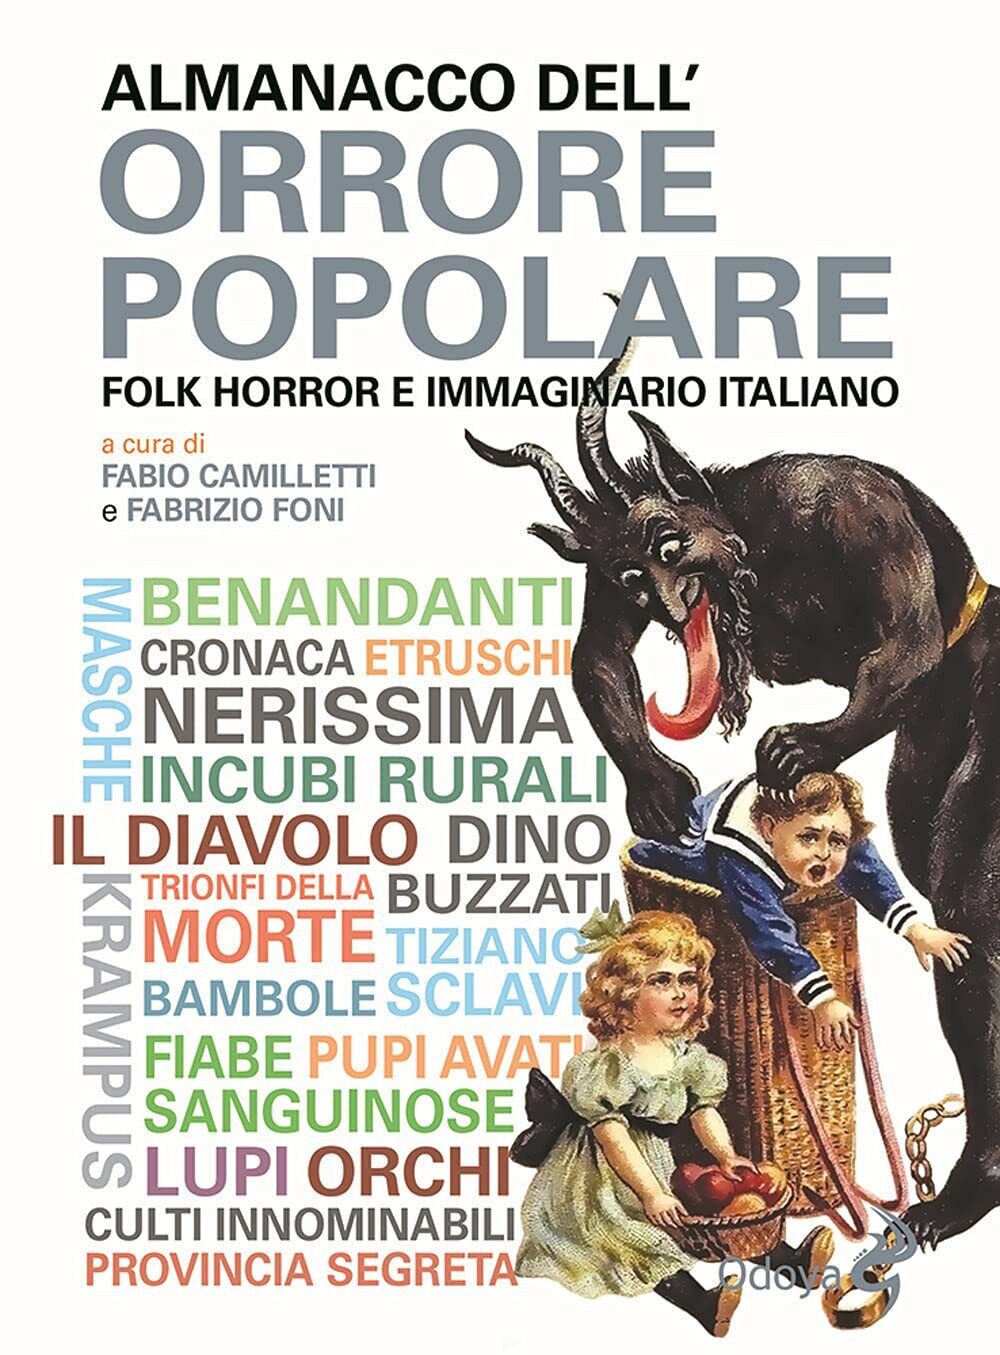 Almanacco dell'orrore popolare. Folk horror e immaginario italiano - Odoya,2021